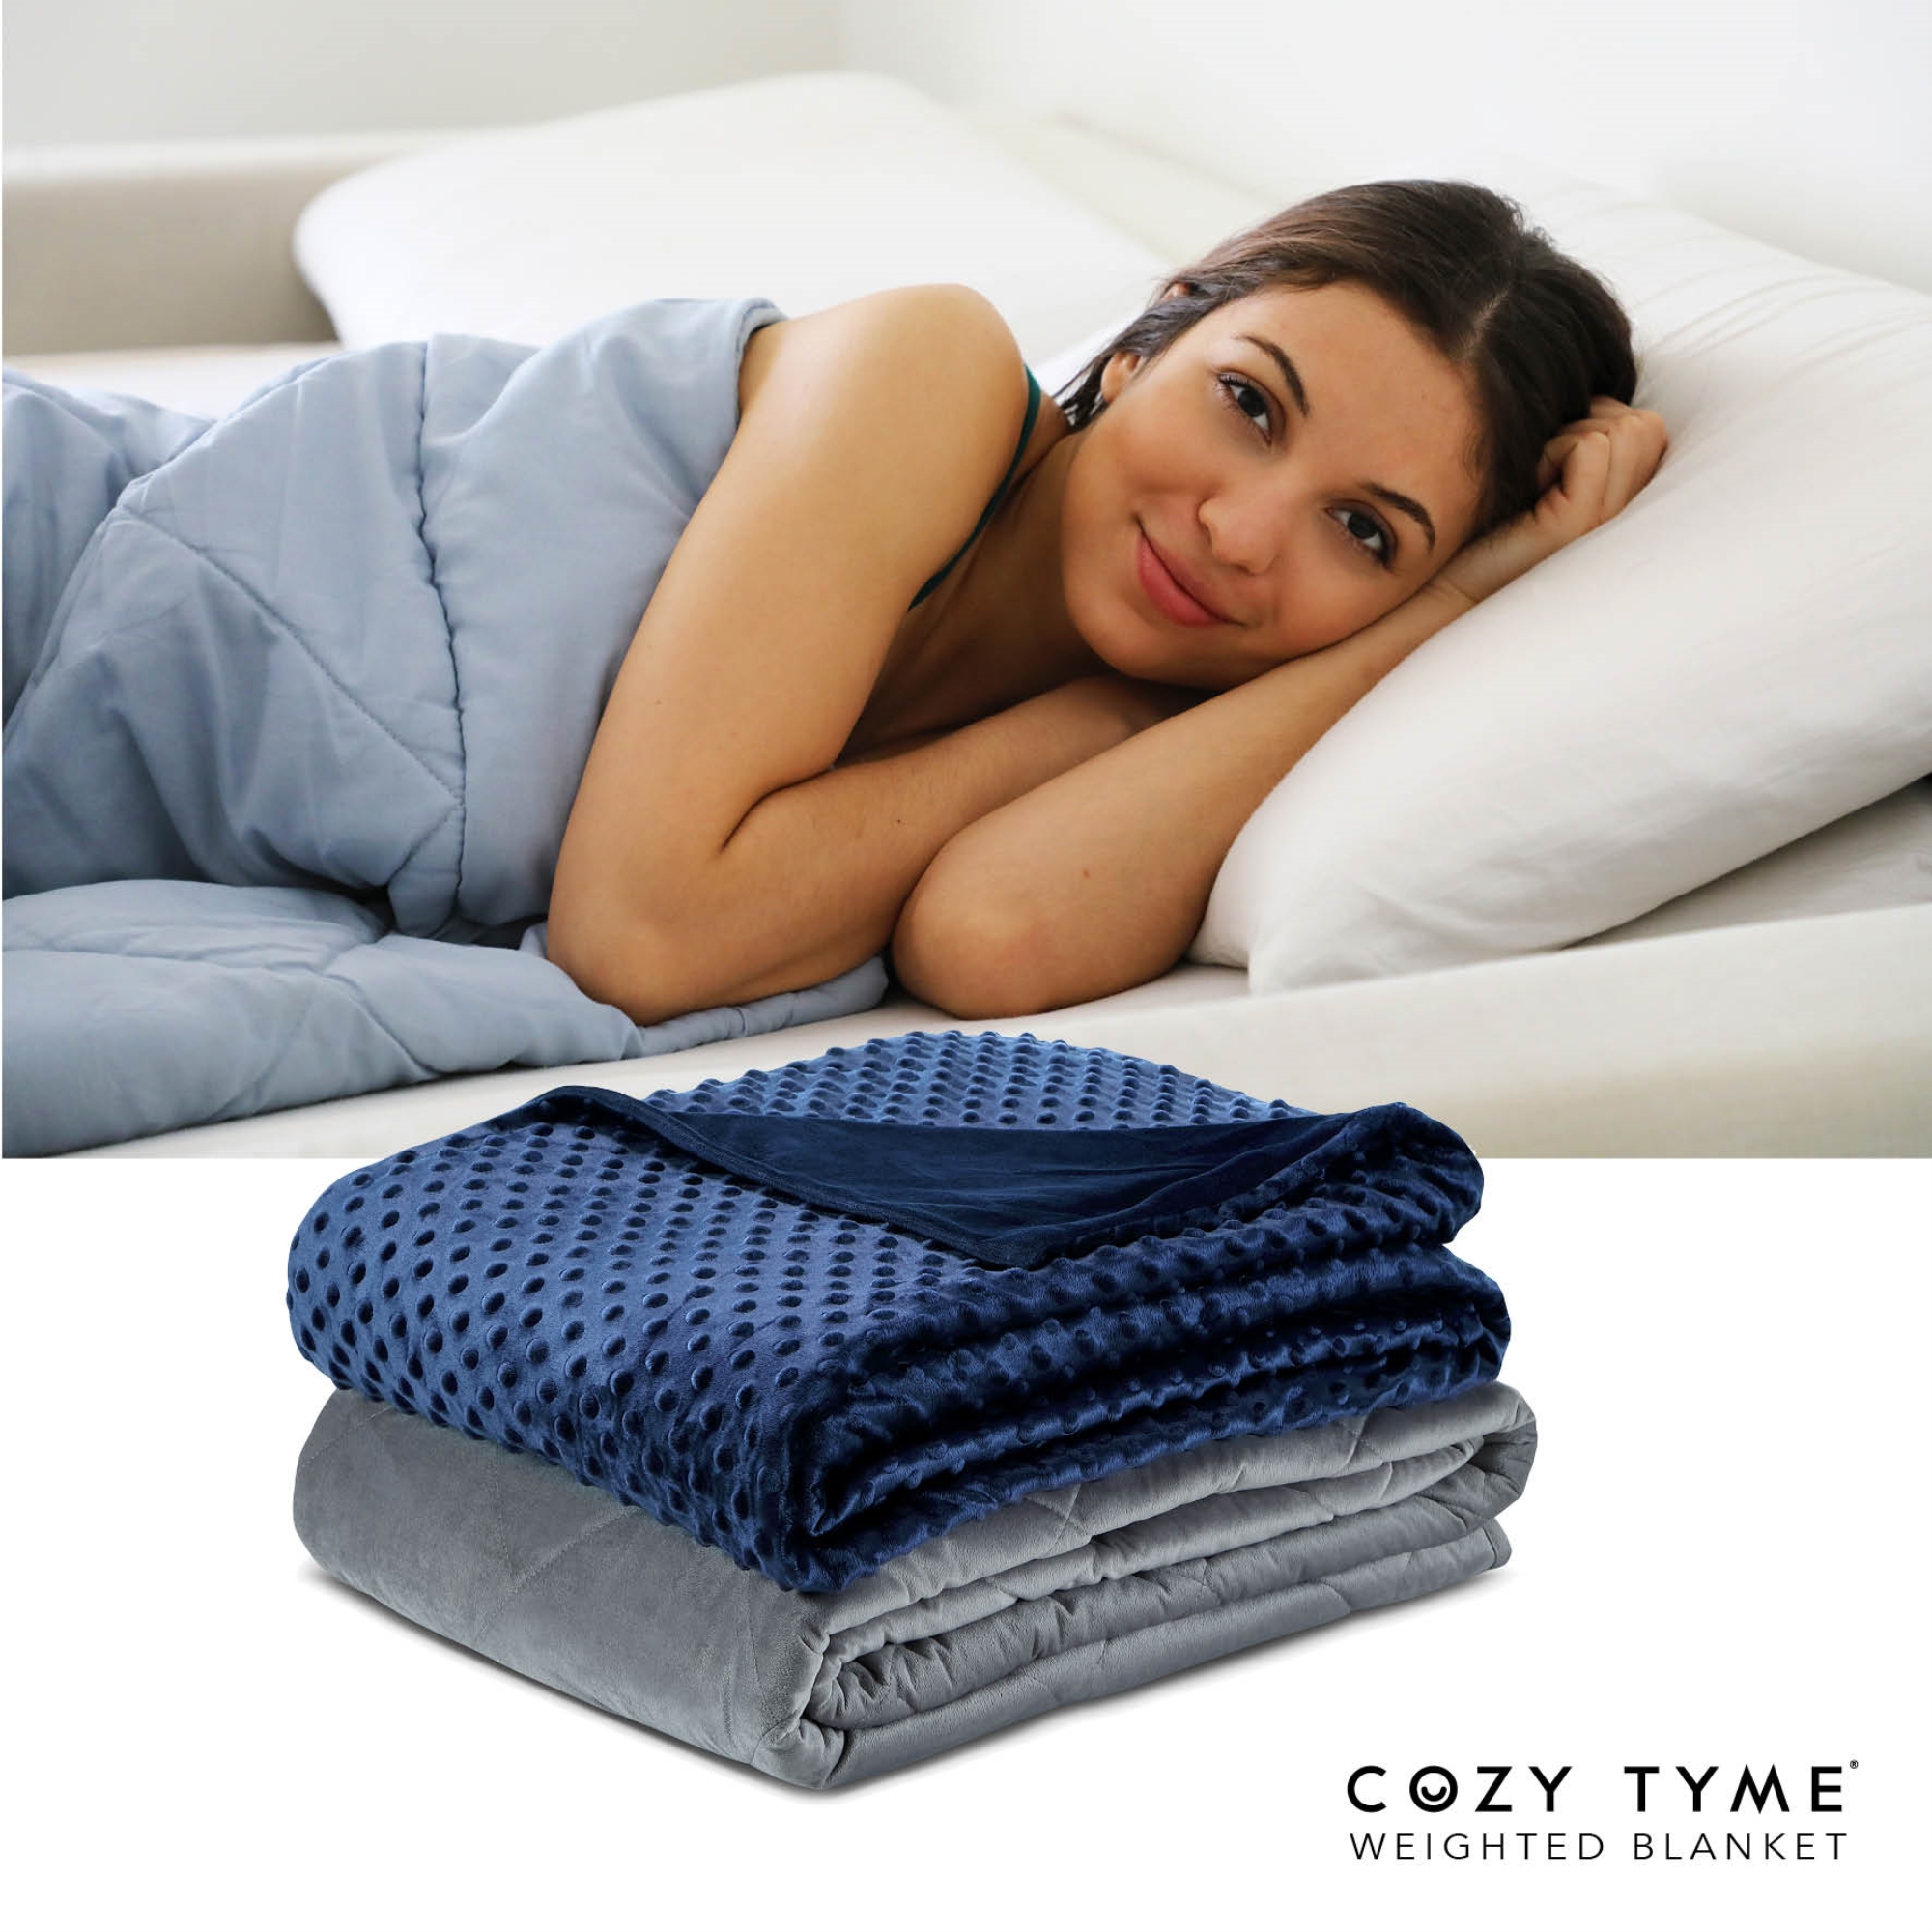 Cozy Tyme Navy Duvet: 100% Polyester, Blanket: 100% Cotton Throws 20 Pound Calm Sleeping